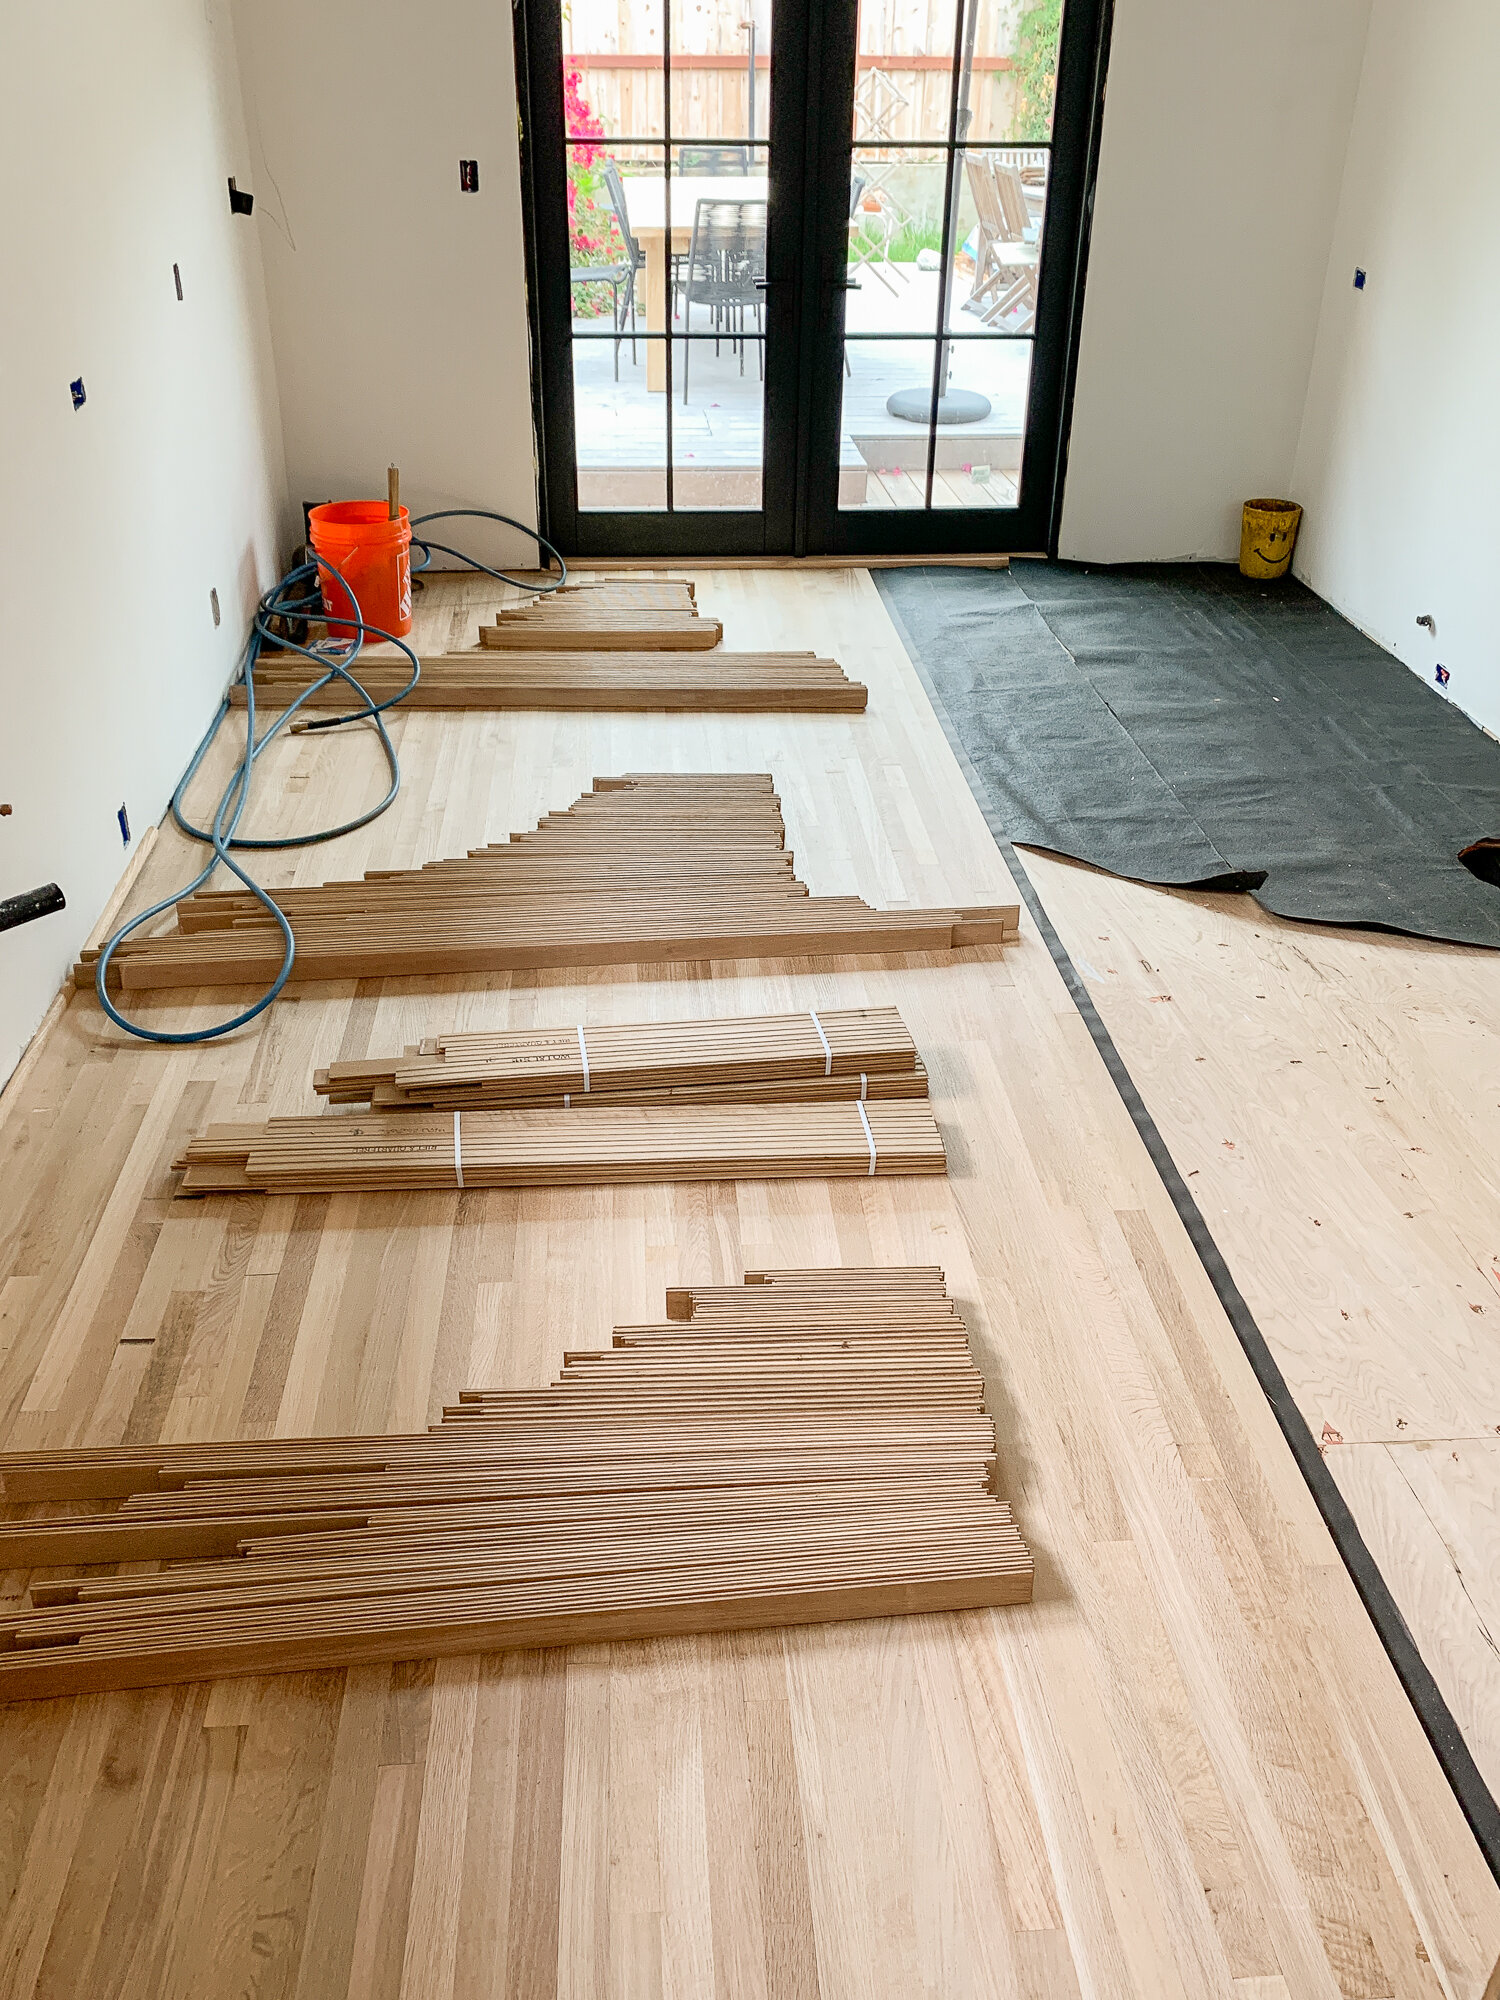 Installing New Hardwood Floors In Our, Installing Oak Hardwood Floors